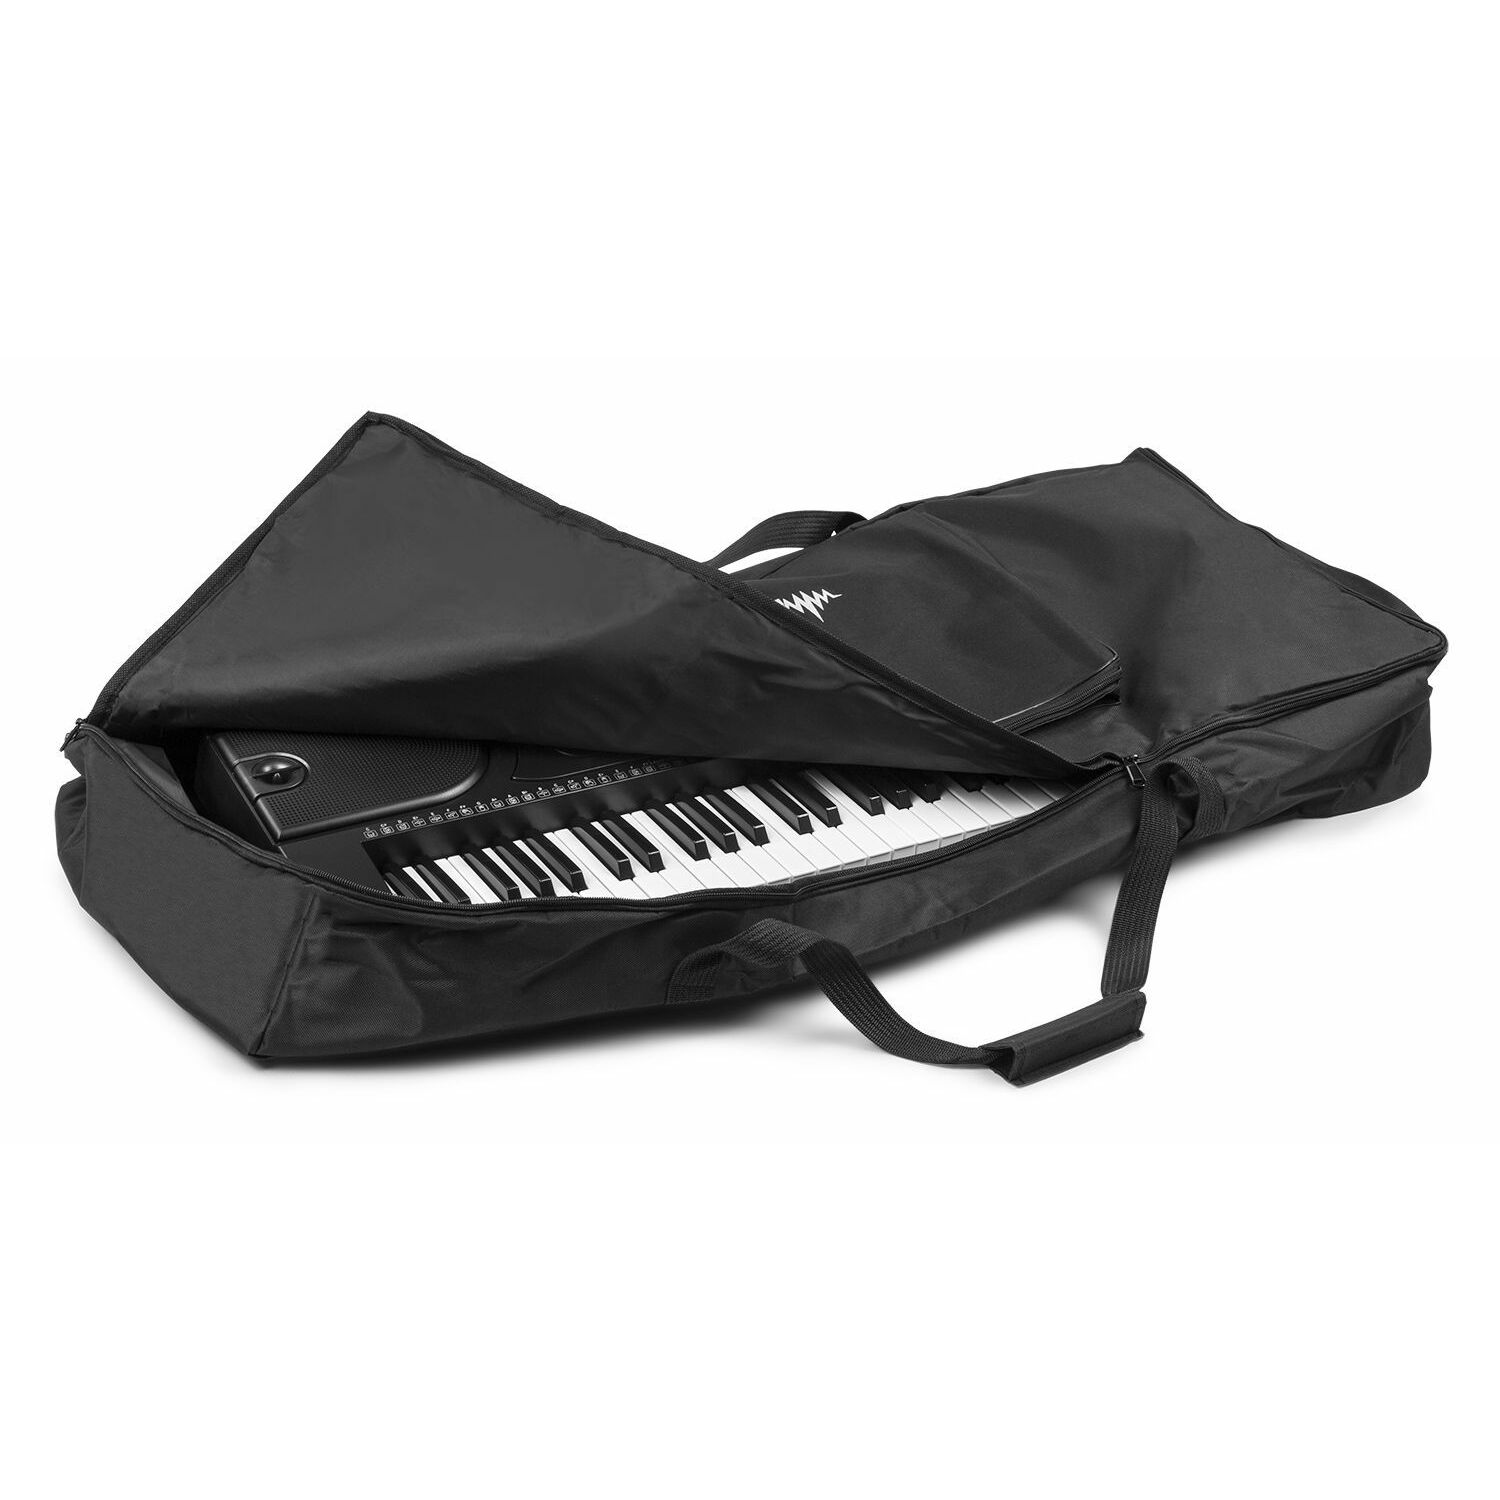 Retourdeal - MAX AC138 universele tas voor keyboards